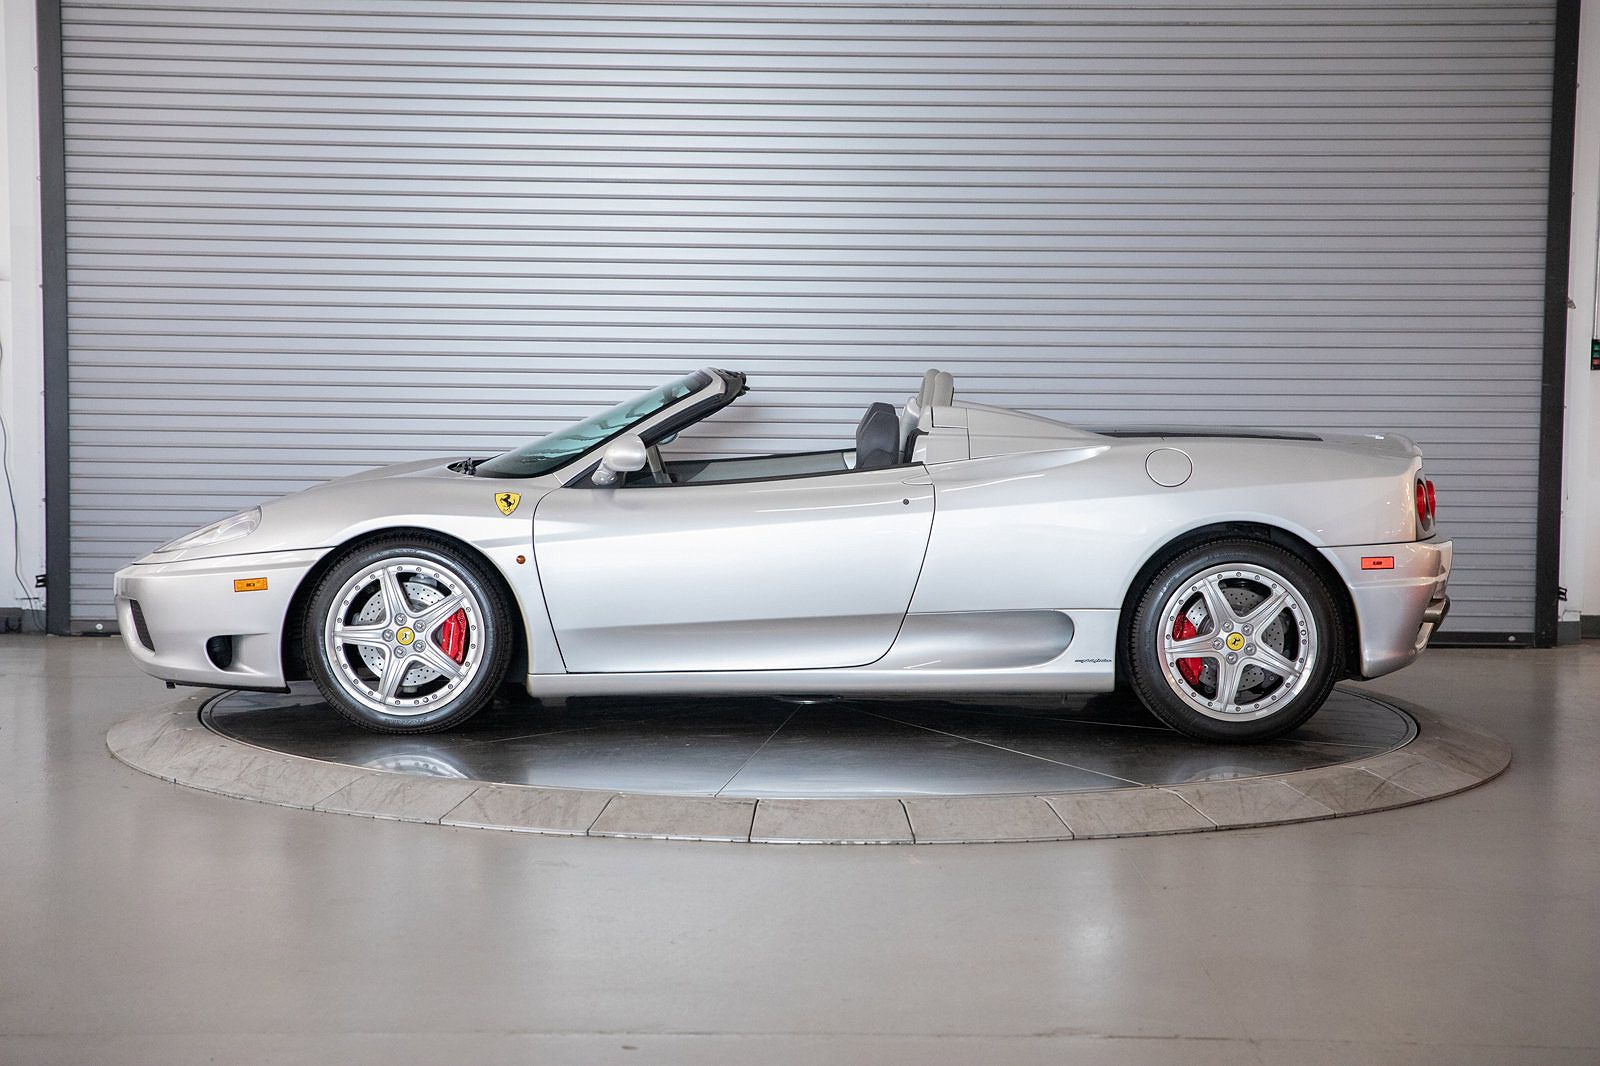 2003 Ferrari 360 Spider image 1